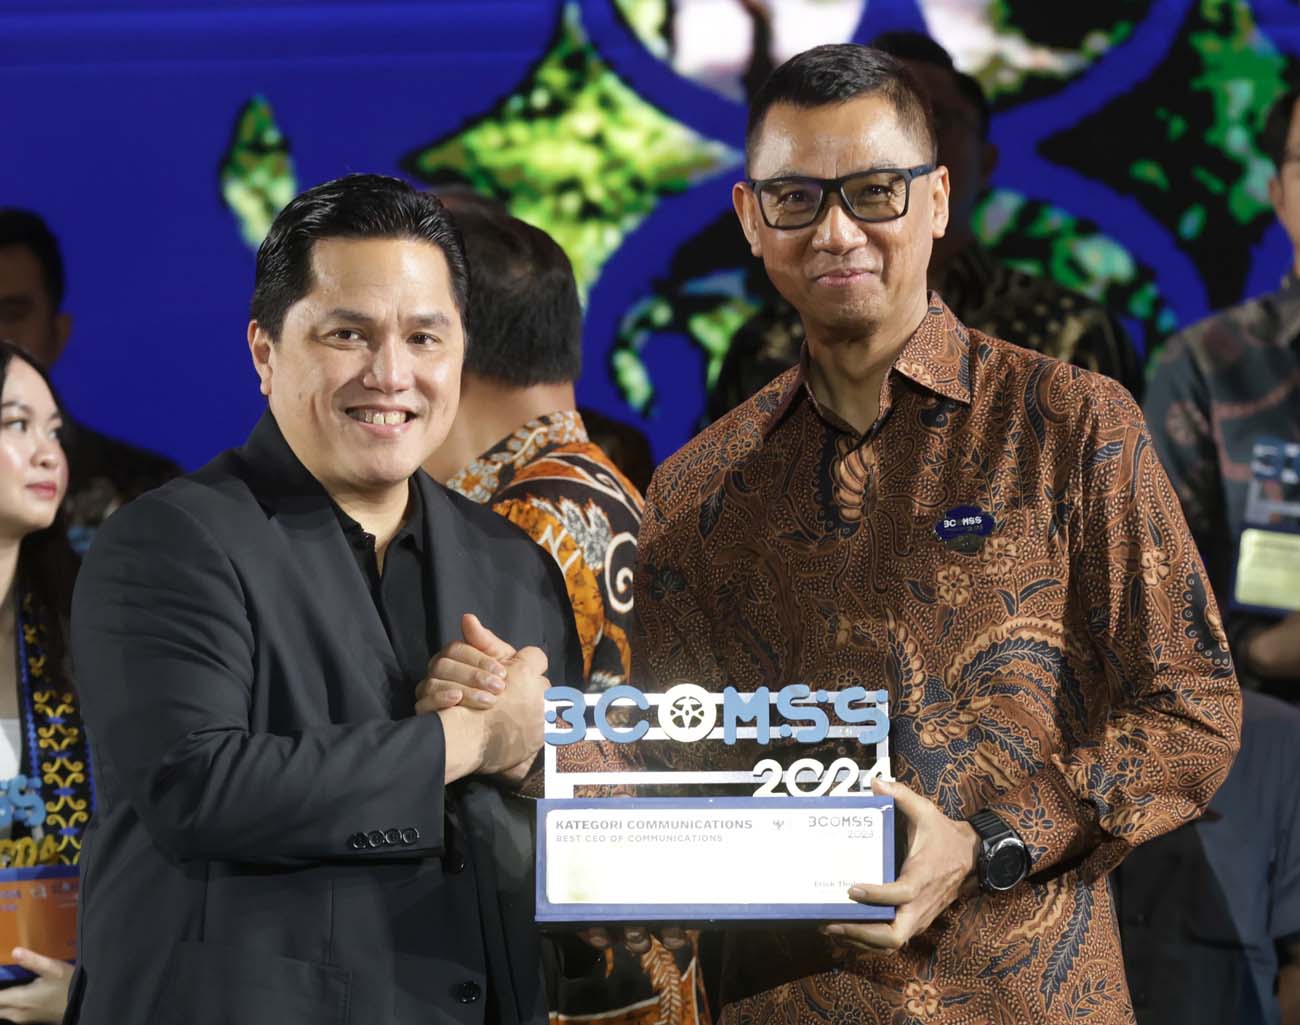 Direktur Utama PT PLN (Persero) Darmawan Prasodjo Berhasil Meraih Penghargaan Best CEO Communications